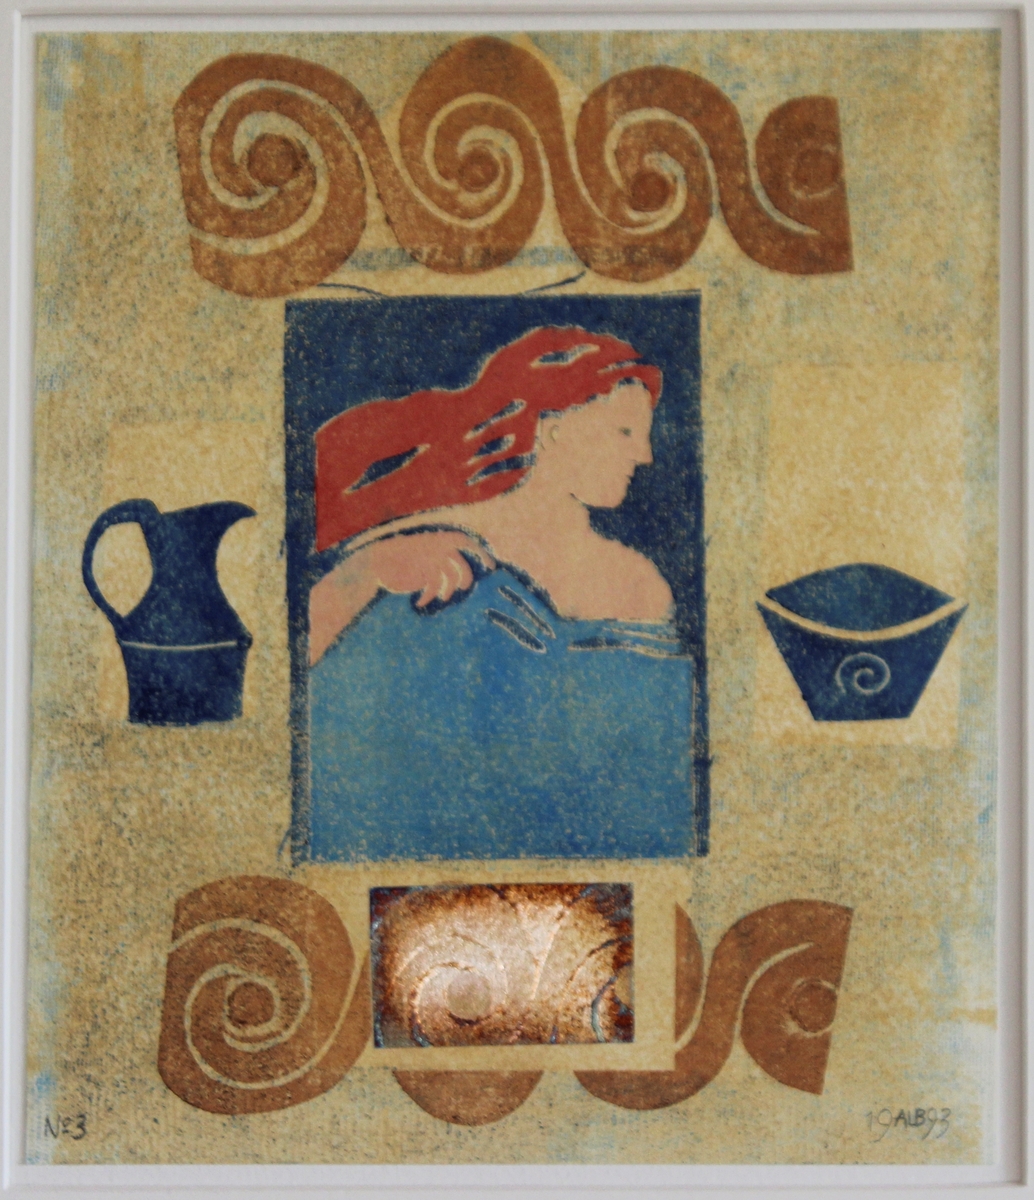 Grafik i stående format föreställande rödhårig kvinna inom blå fyrkant centrerat på beige papper. Ovanför och nedanför fyrkanten bårder av löpande hund. På sidorna om fyrkanten blå kanna och blå skål.